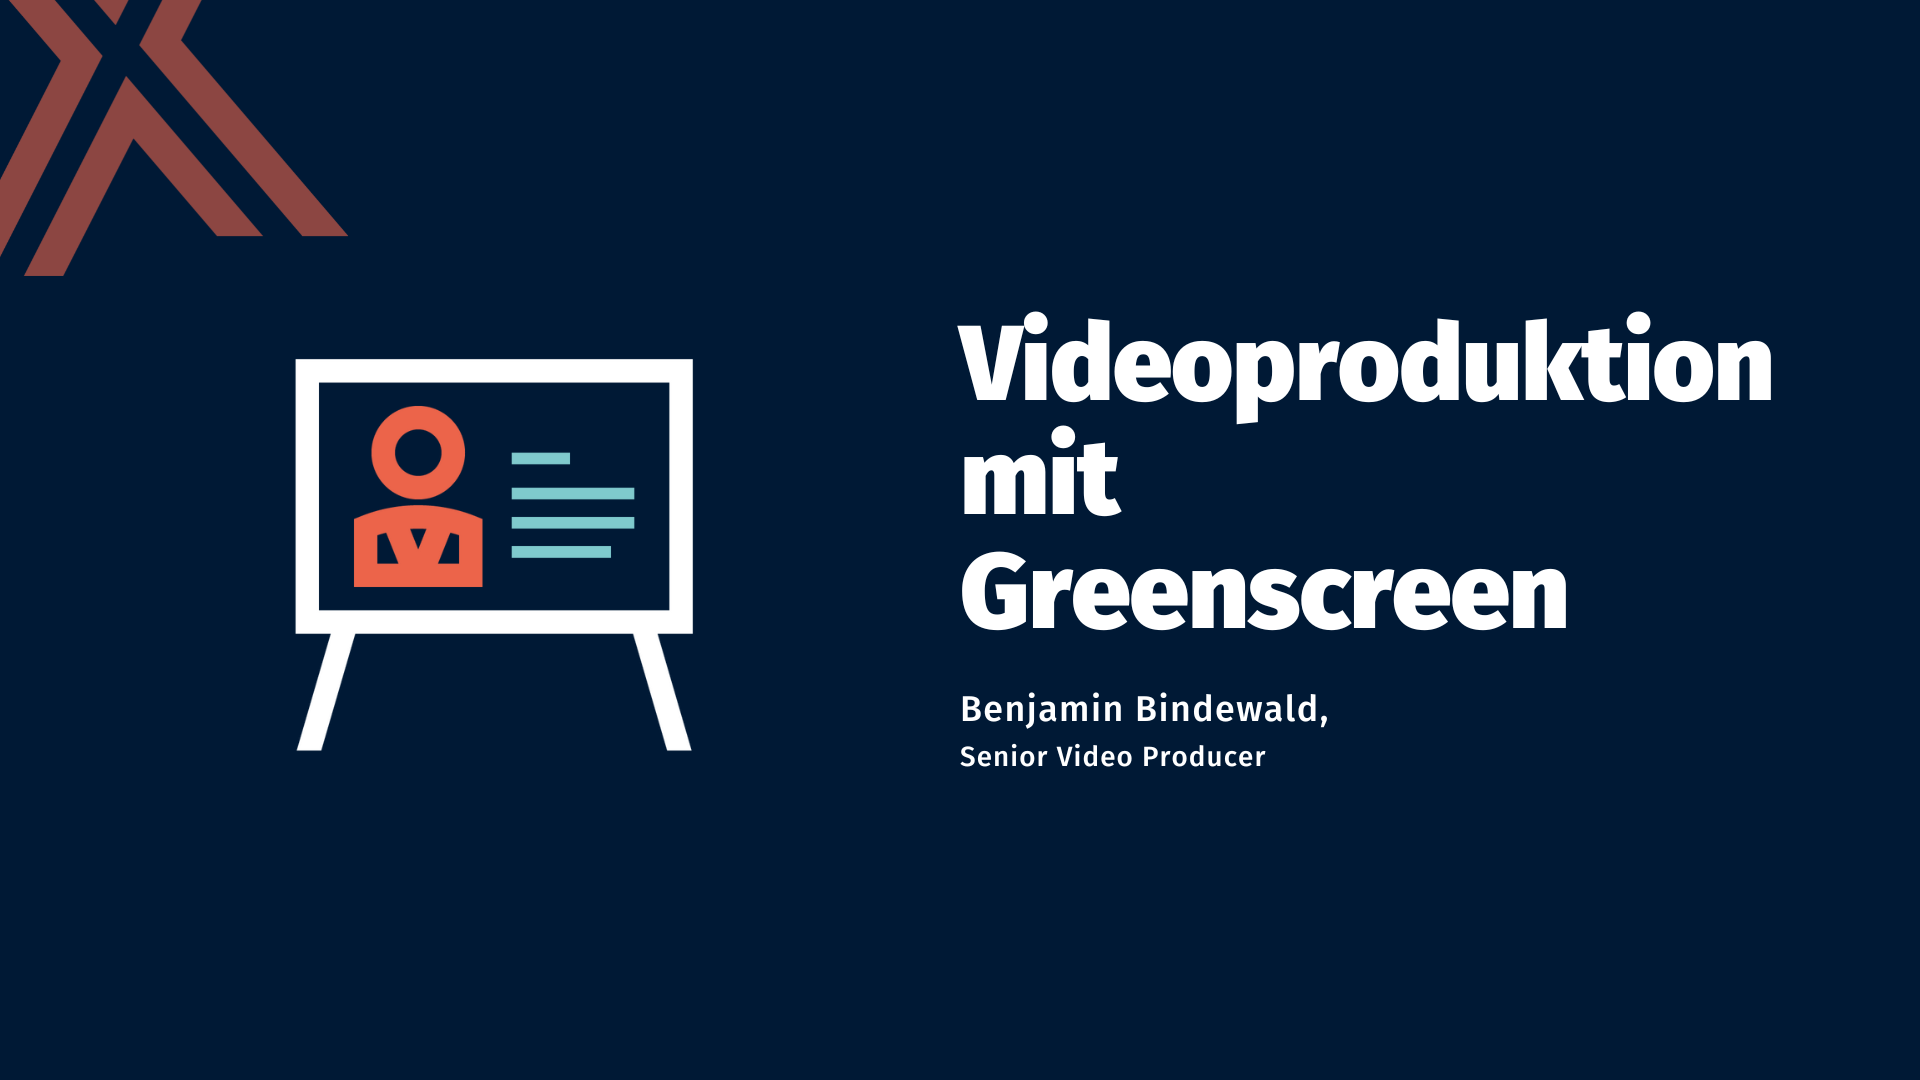 Videoproduktion mit Greenscreen